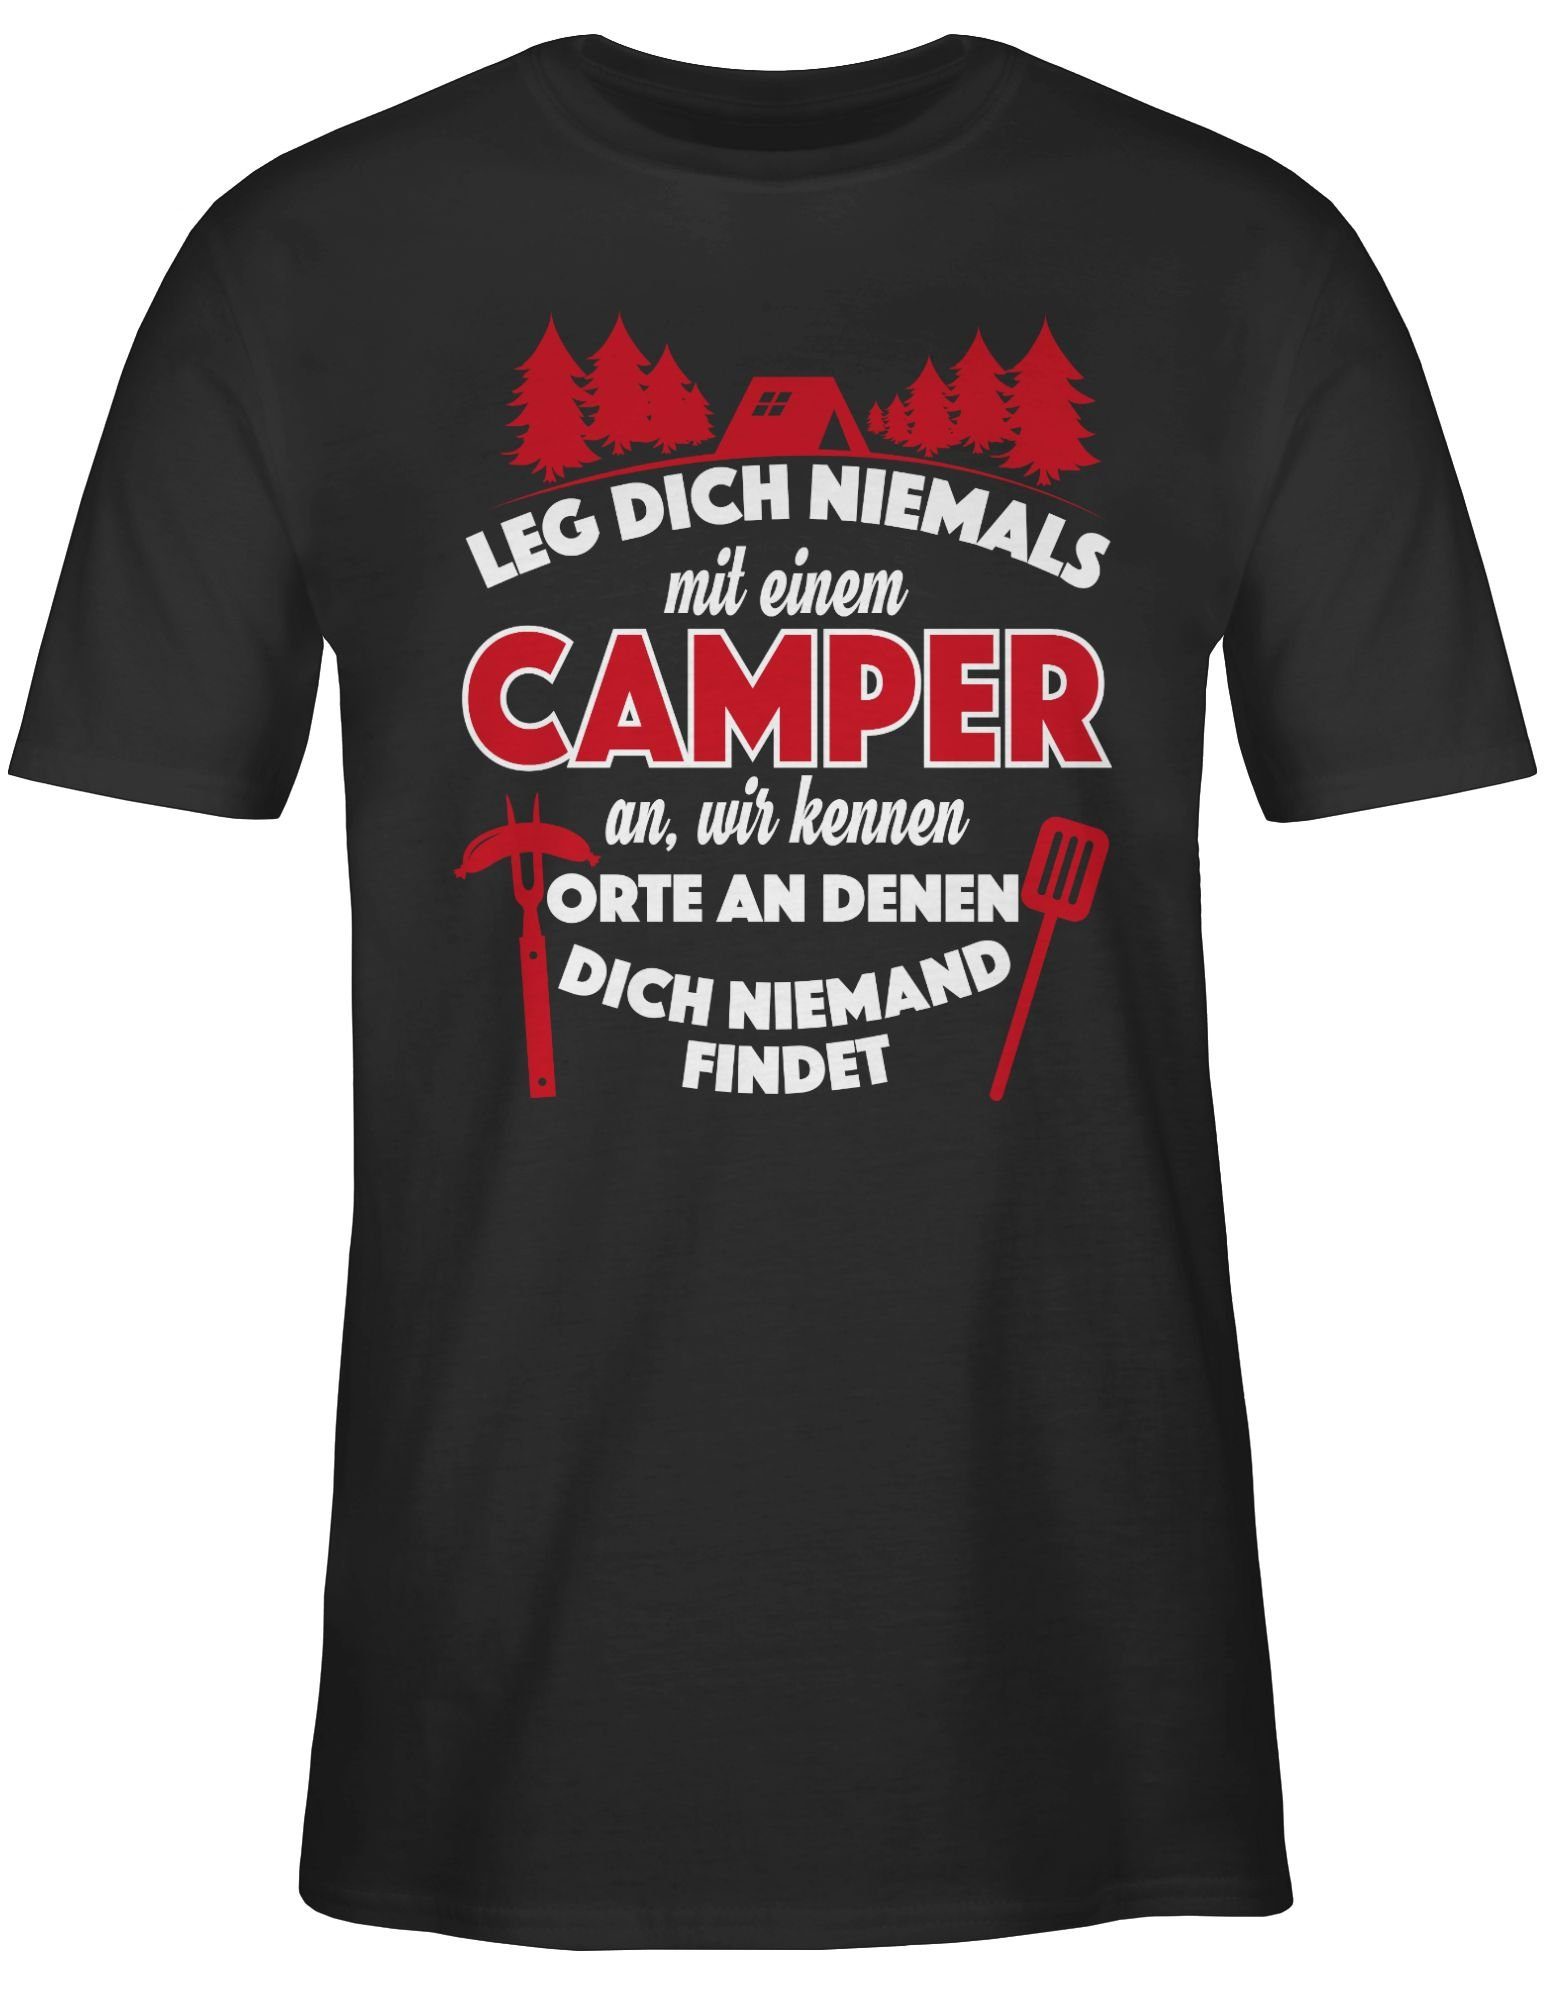 Shirtracer T-Shirt »Leg dich niemals mit einem Camper an - Hobby Outfit -  Herren Premium T-Shirt« leg dich nicht mit einem camper an - herren tshirt  lustige sprüche